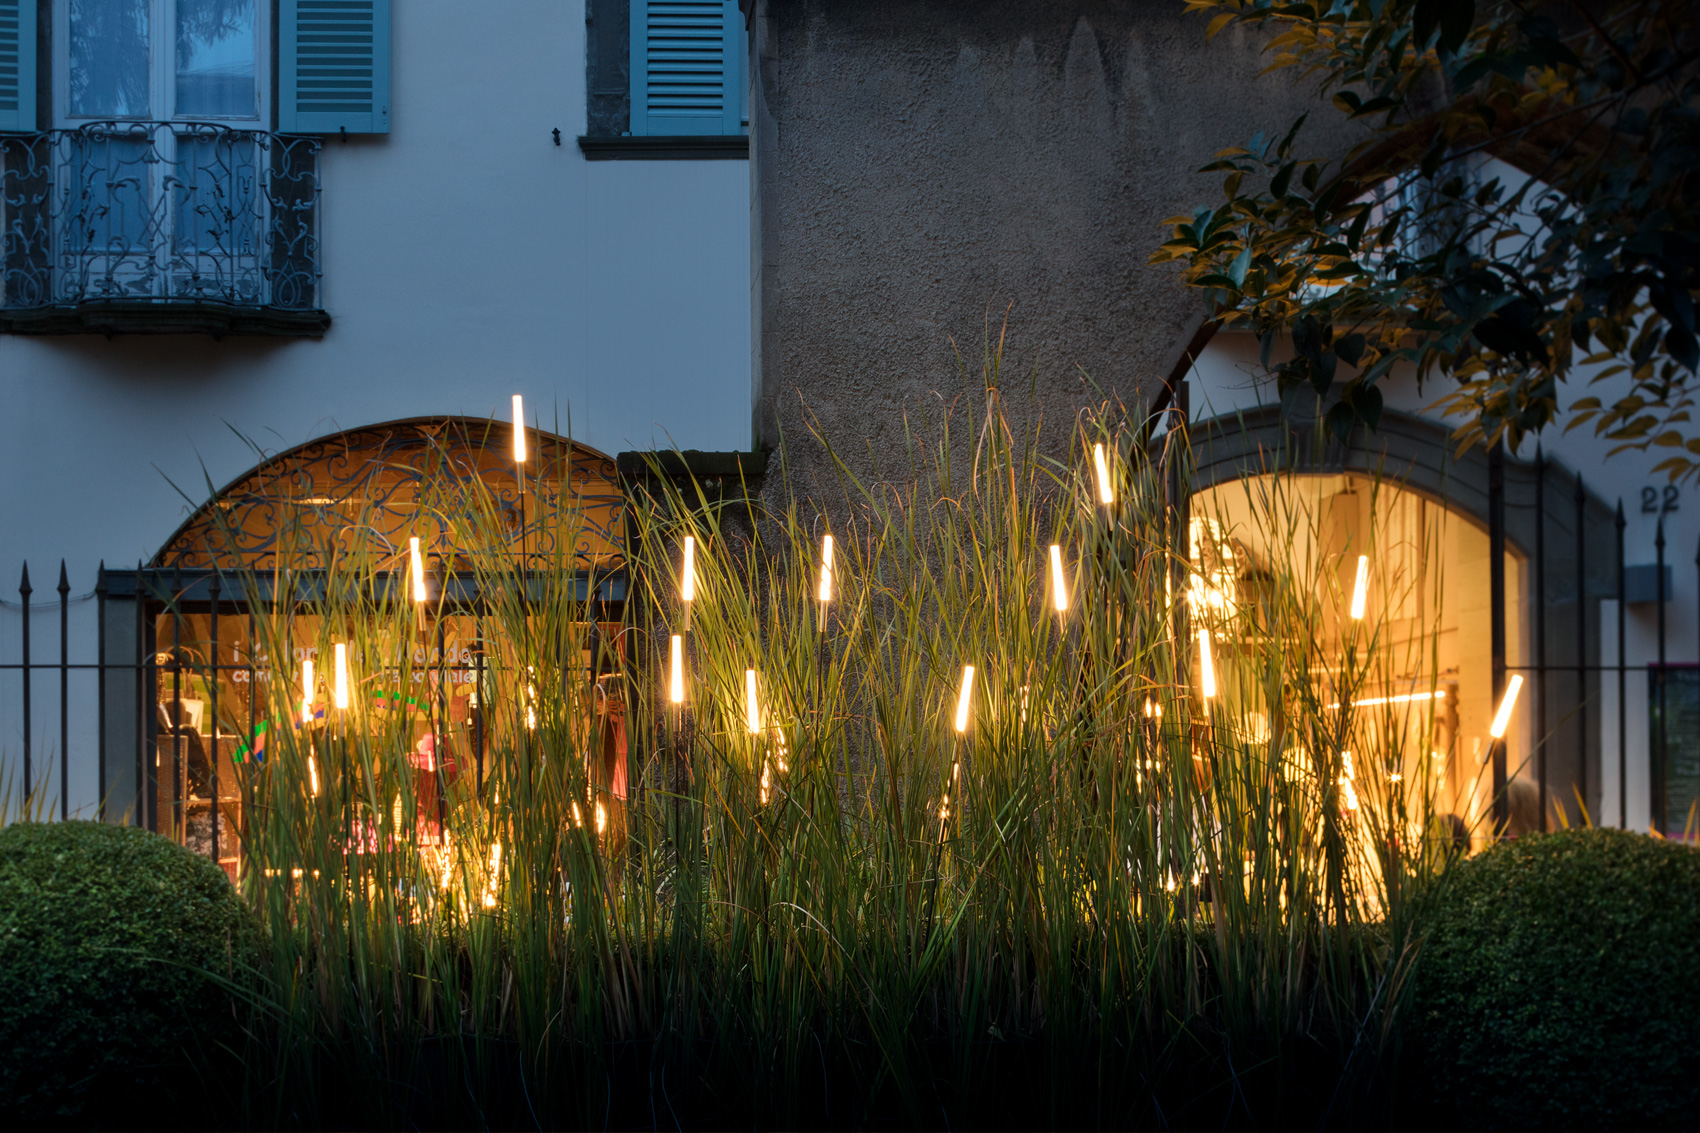 Catellani & Smith “Lighting Nature” for I Maestri del Paesaggio